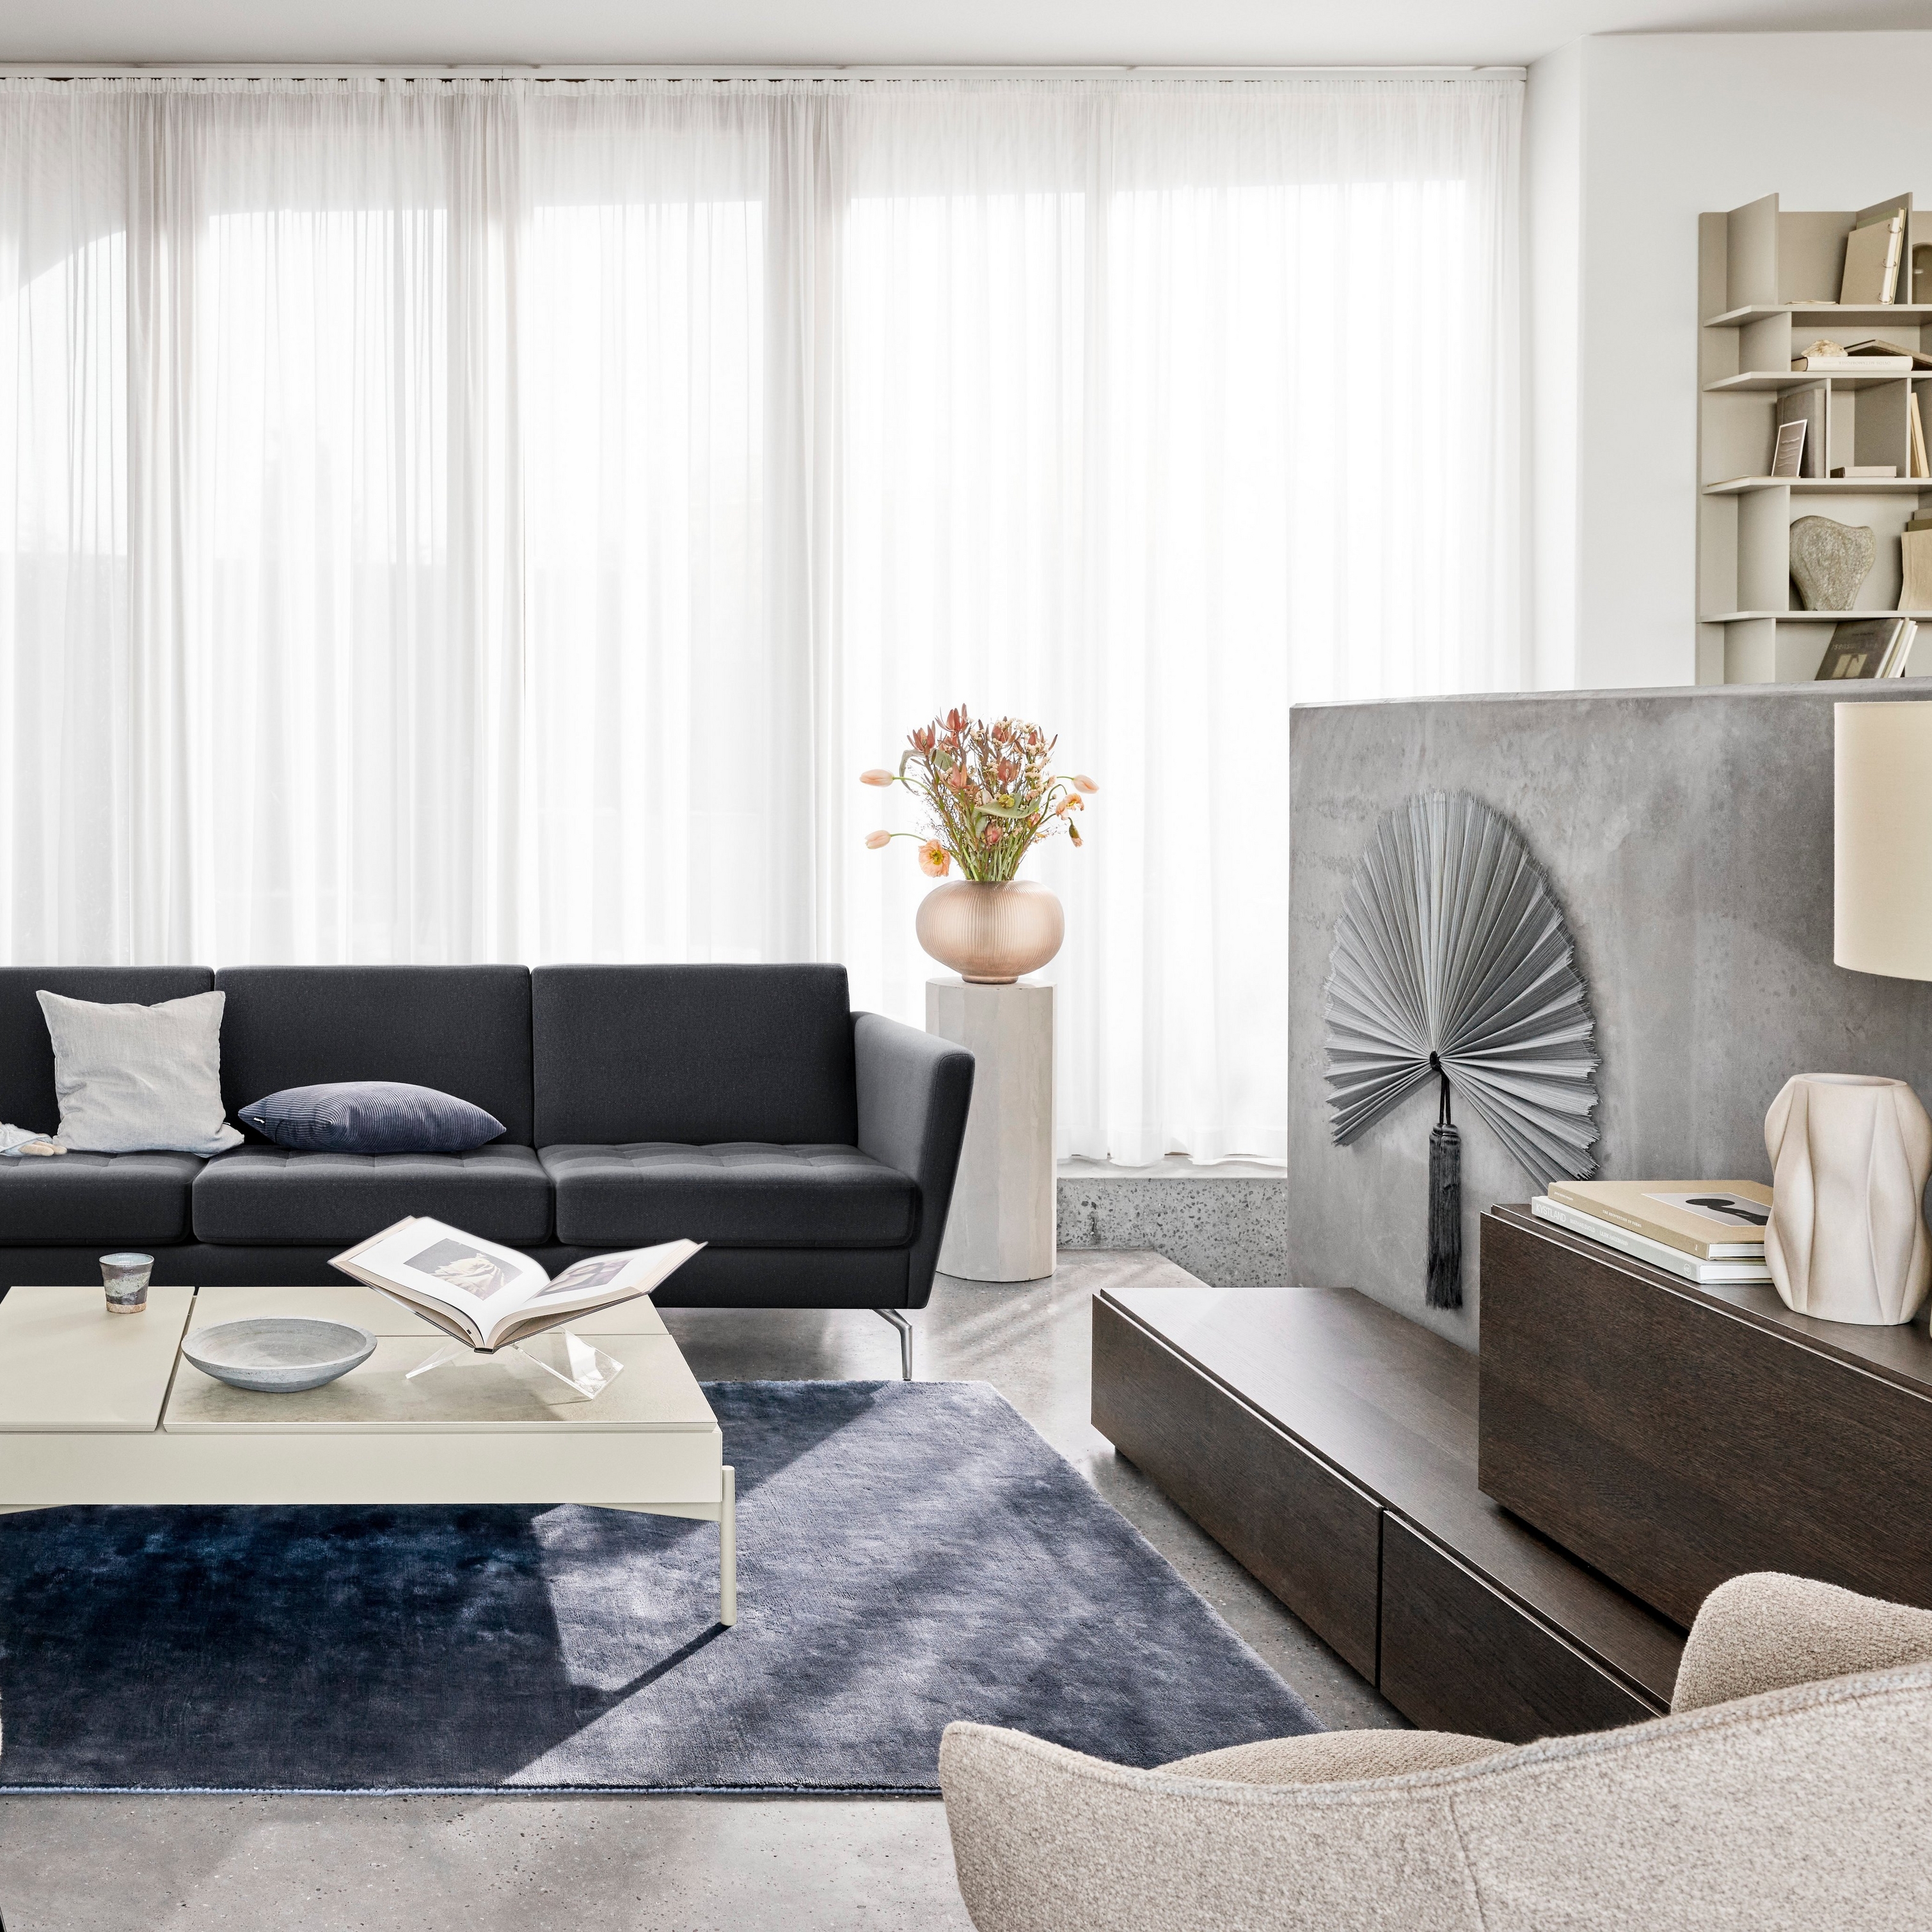 Modernt vardagsrum med svart soffa, fåtöljer, skira gardiner och dekorativa accessoarer.